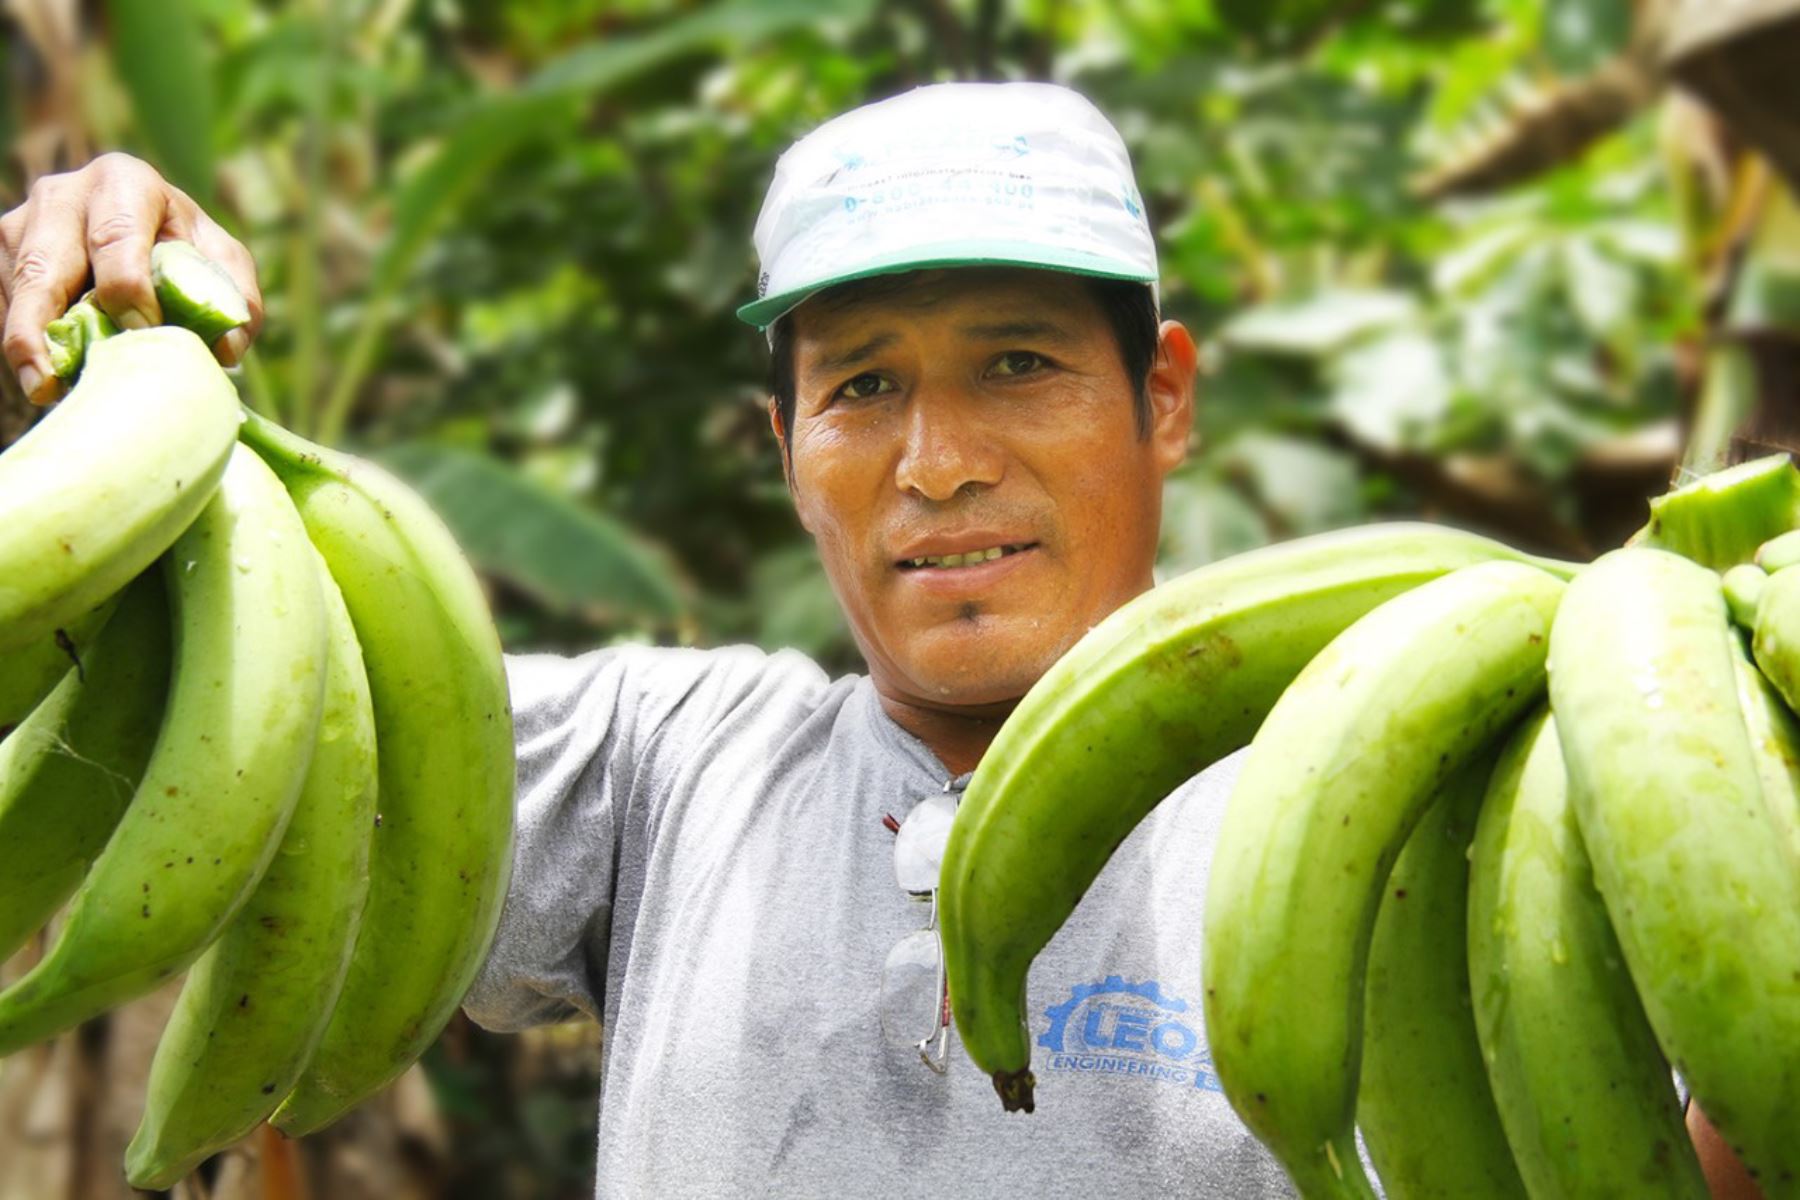 El plátano es una fruta con gran demanda en el mercado nacional e internacional. Foto: ANDINA/difusión.